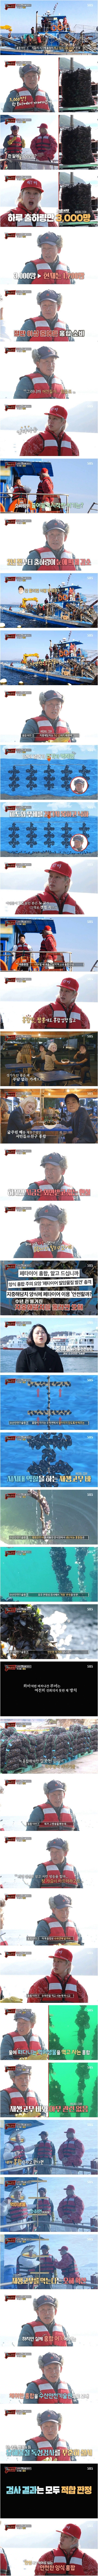 [맛남의광장] 홍합의 오해를 풀어달라는 어민 - 꾸르